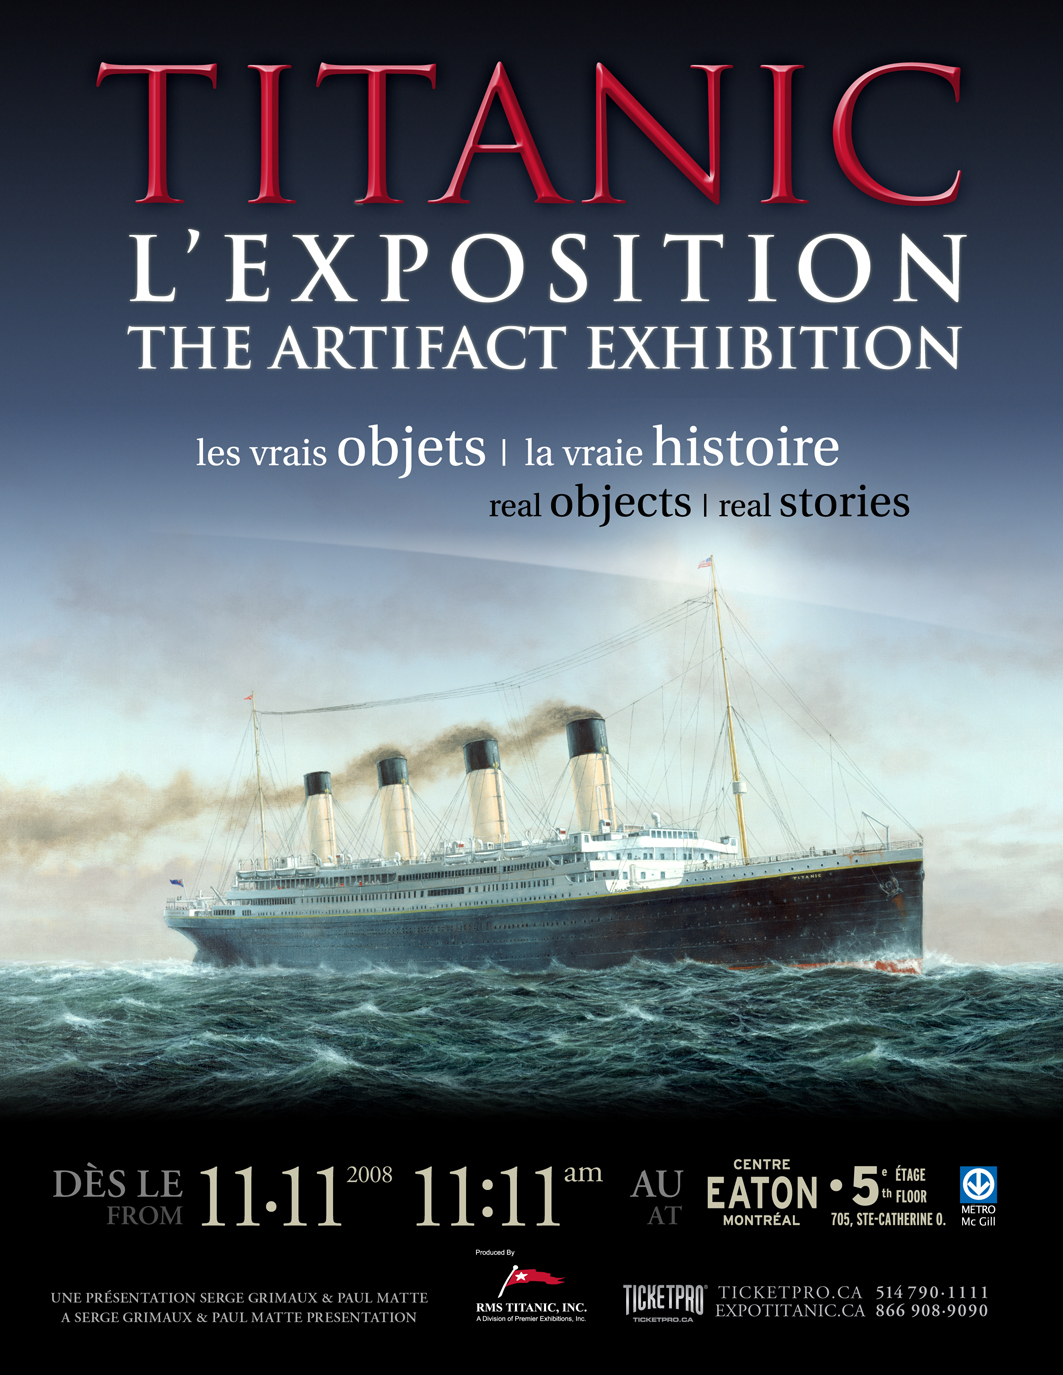 Press Cover - - Titanic l'Exposition | KIKDESIGN.ca - Branding-Web-Media - Agence web - SEO - Graphisme - Logo - Pub - Imprimerie - Création - Montages - Vidéo - Audio - 3D - Gestion de médias sociaux